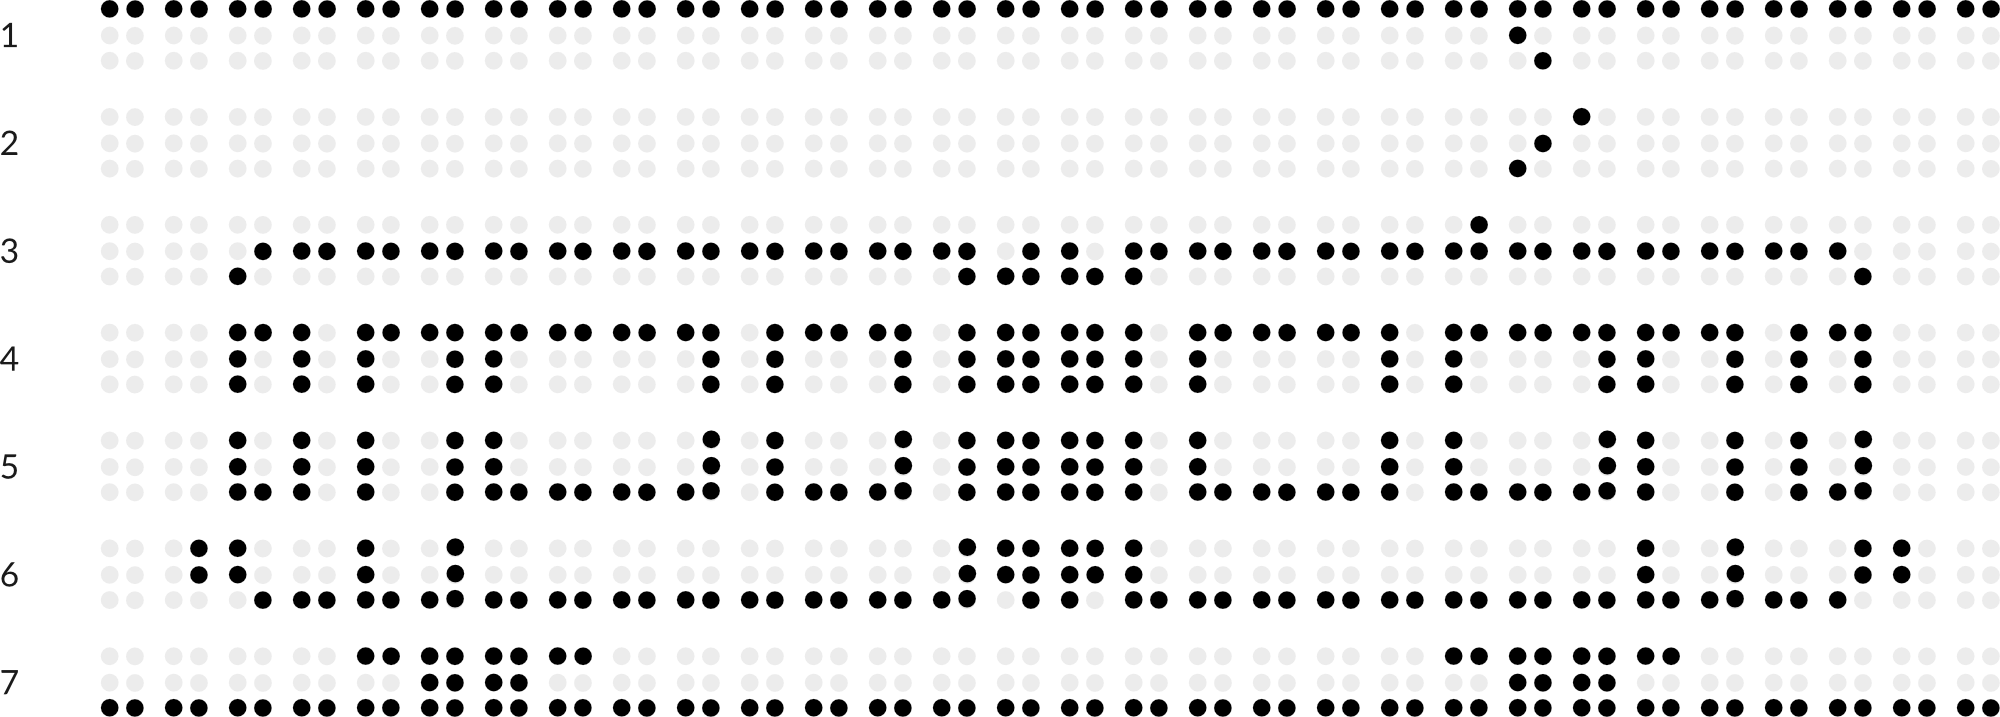 Braillebild mit Raster: Straßenbahn